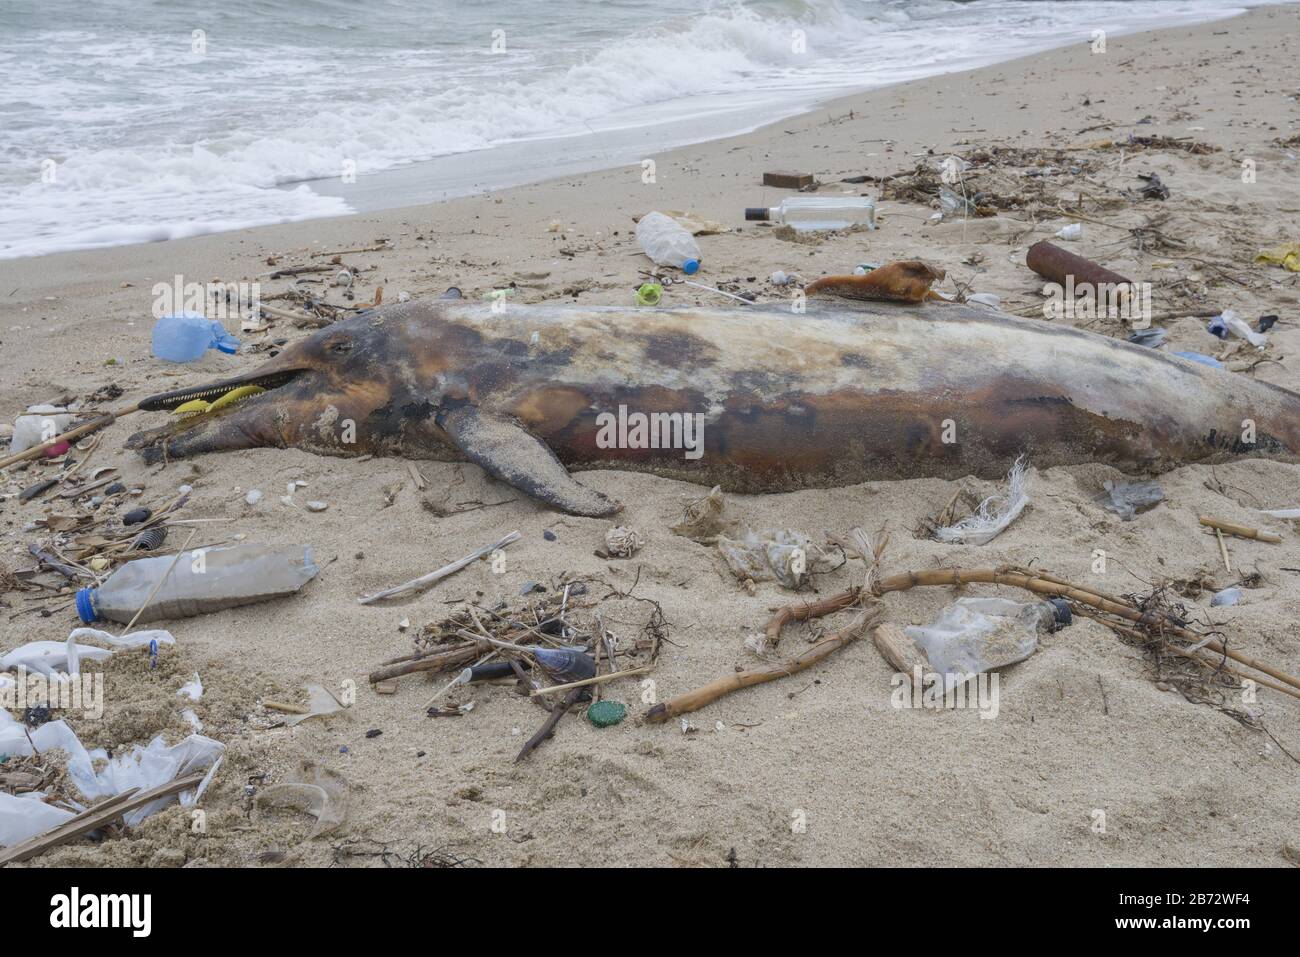 Toter junger Delphin wird am Ufer von Plastikflaschen, Taschen und Müll aufgespült, die im Meer, vor dem Hintergrund eines Schwarzen Meeres, geworfen werden. Stockfoto